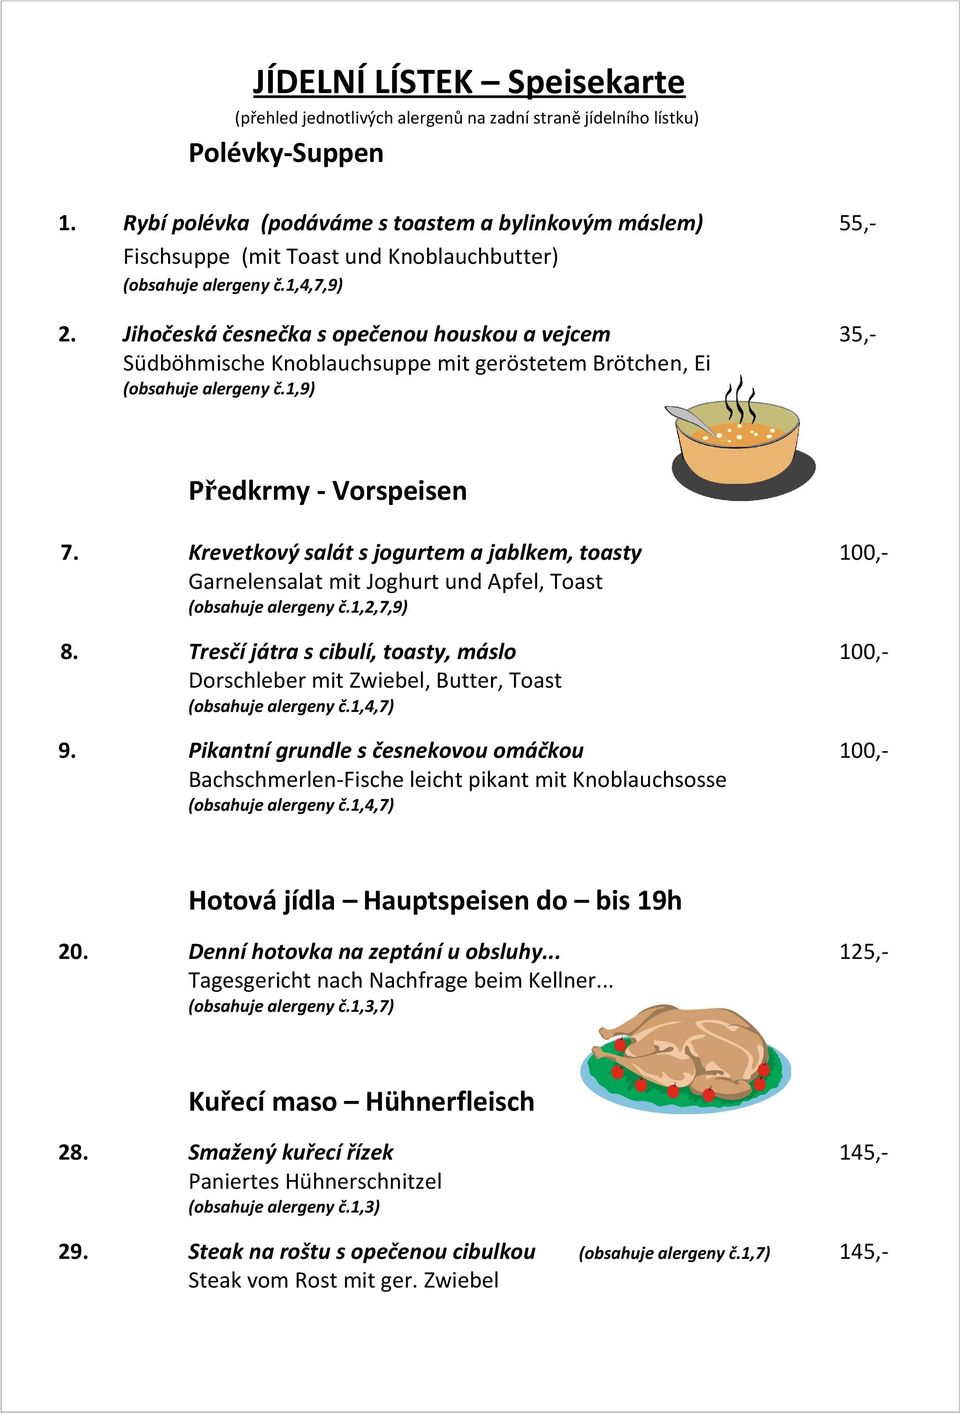 Jihočeská česnečka s opečenou houskou a vejcem 35,- Südböhmische Knoblauchsuppe mit geröstetem Brötchen, Ei (obsahuje alergeny č.1,9) Předkrmy - Vorspeisen 7.